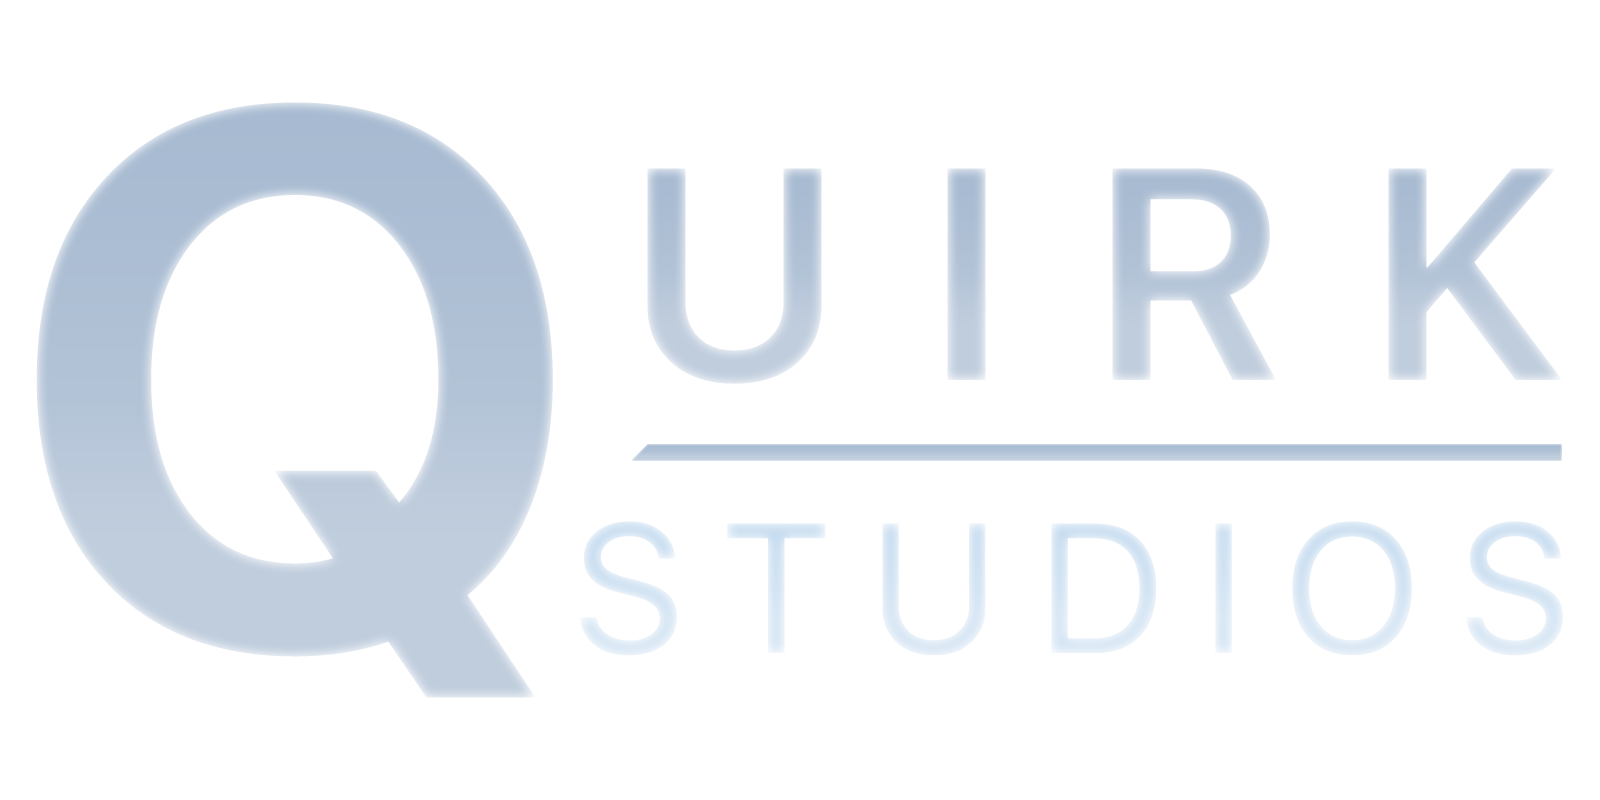 Quirk Studios